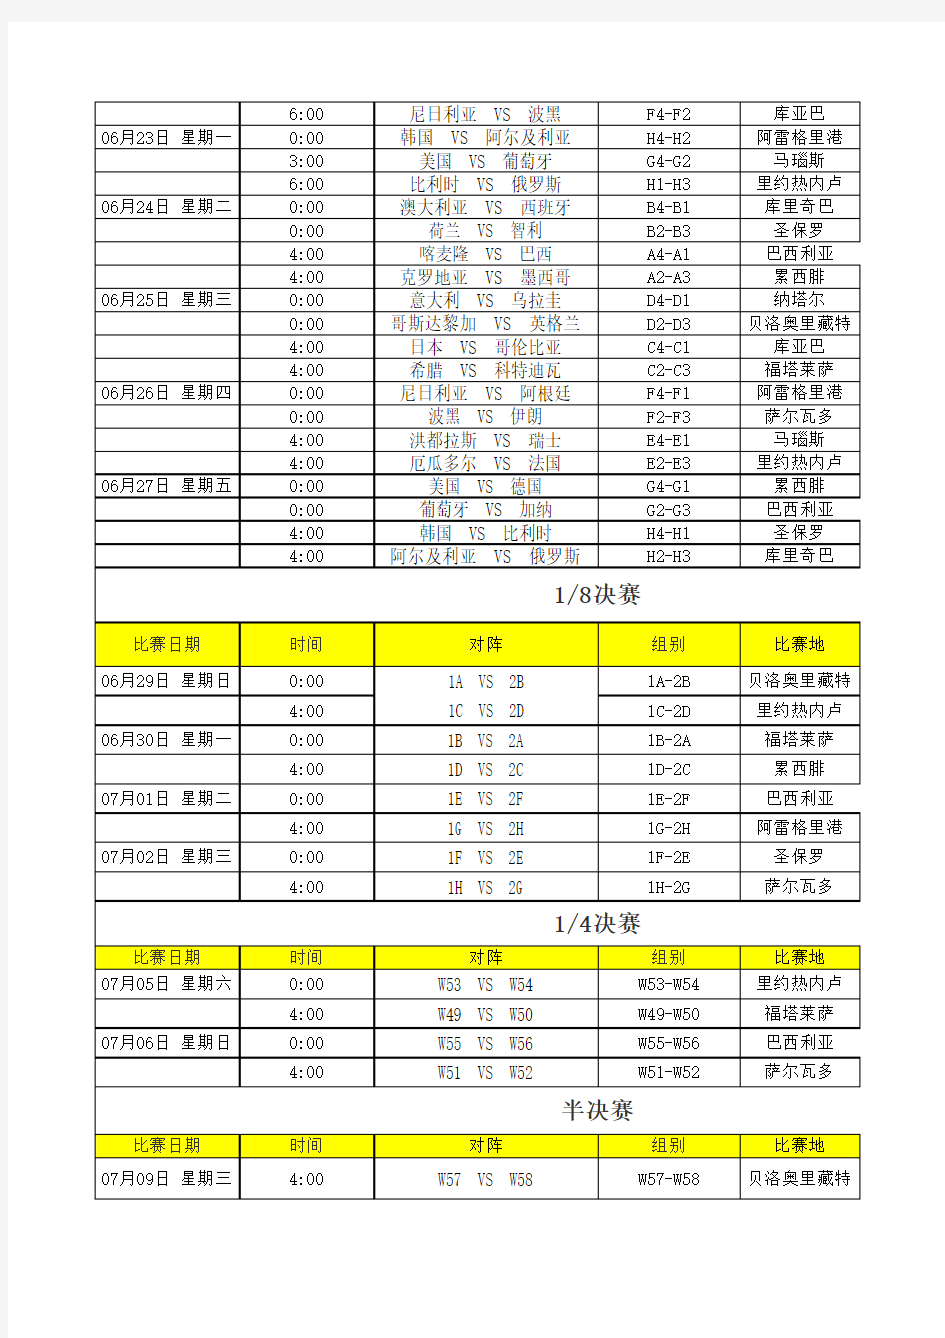 【精品】2014年巴西世界杯小组比赛进程表(实用)